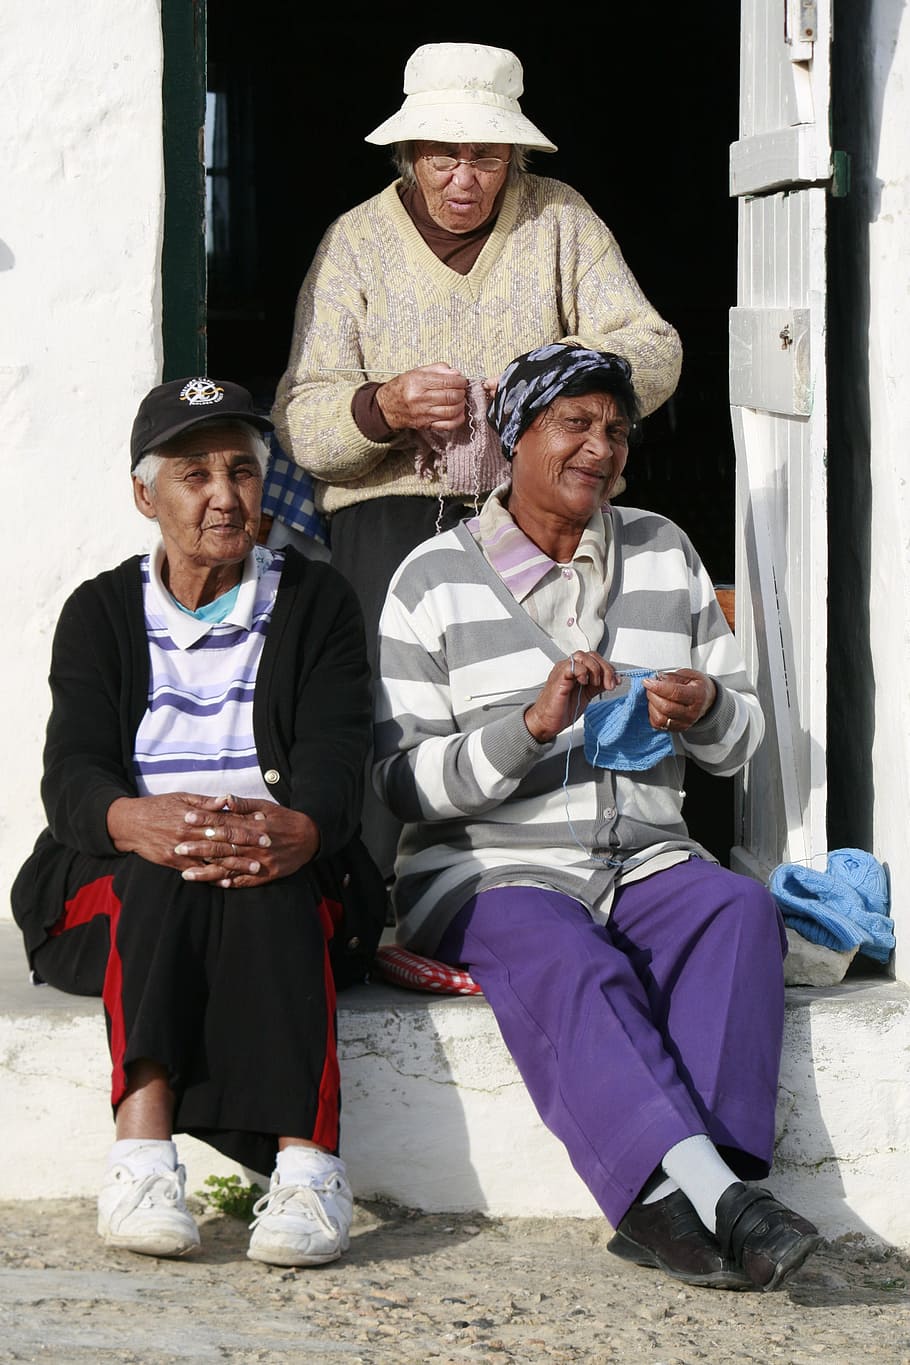 Arniston, Desa Nelayan, Tua, Nona, nona tua, rajutan, di luar ruangan, pensiunan, hobi, orang-orang